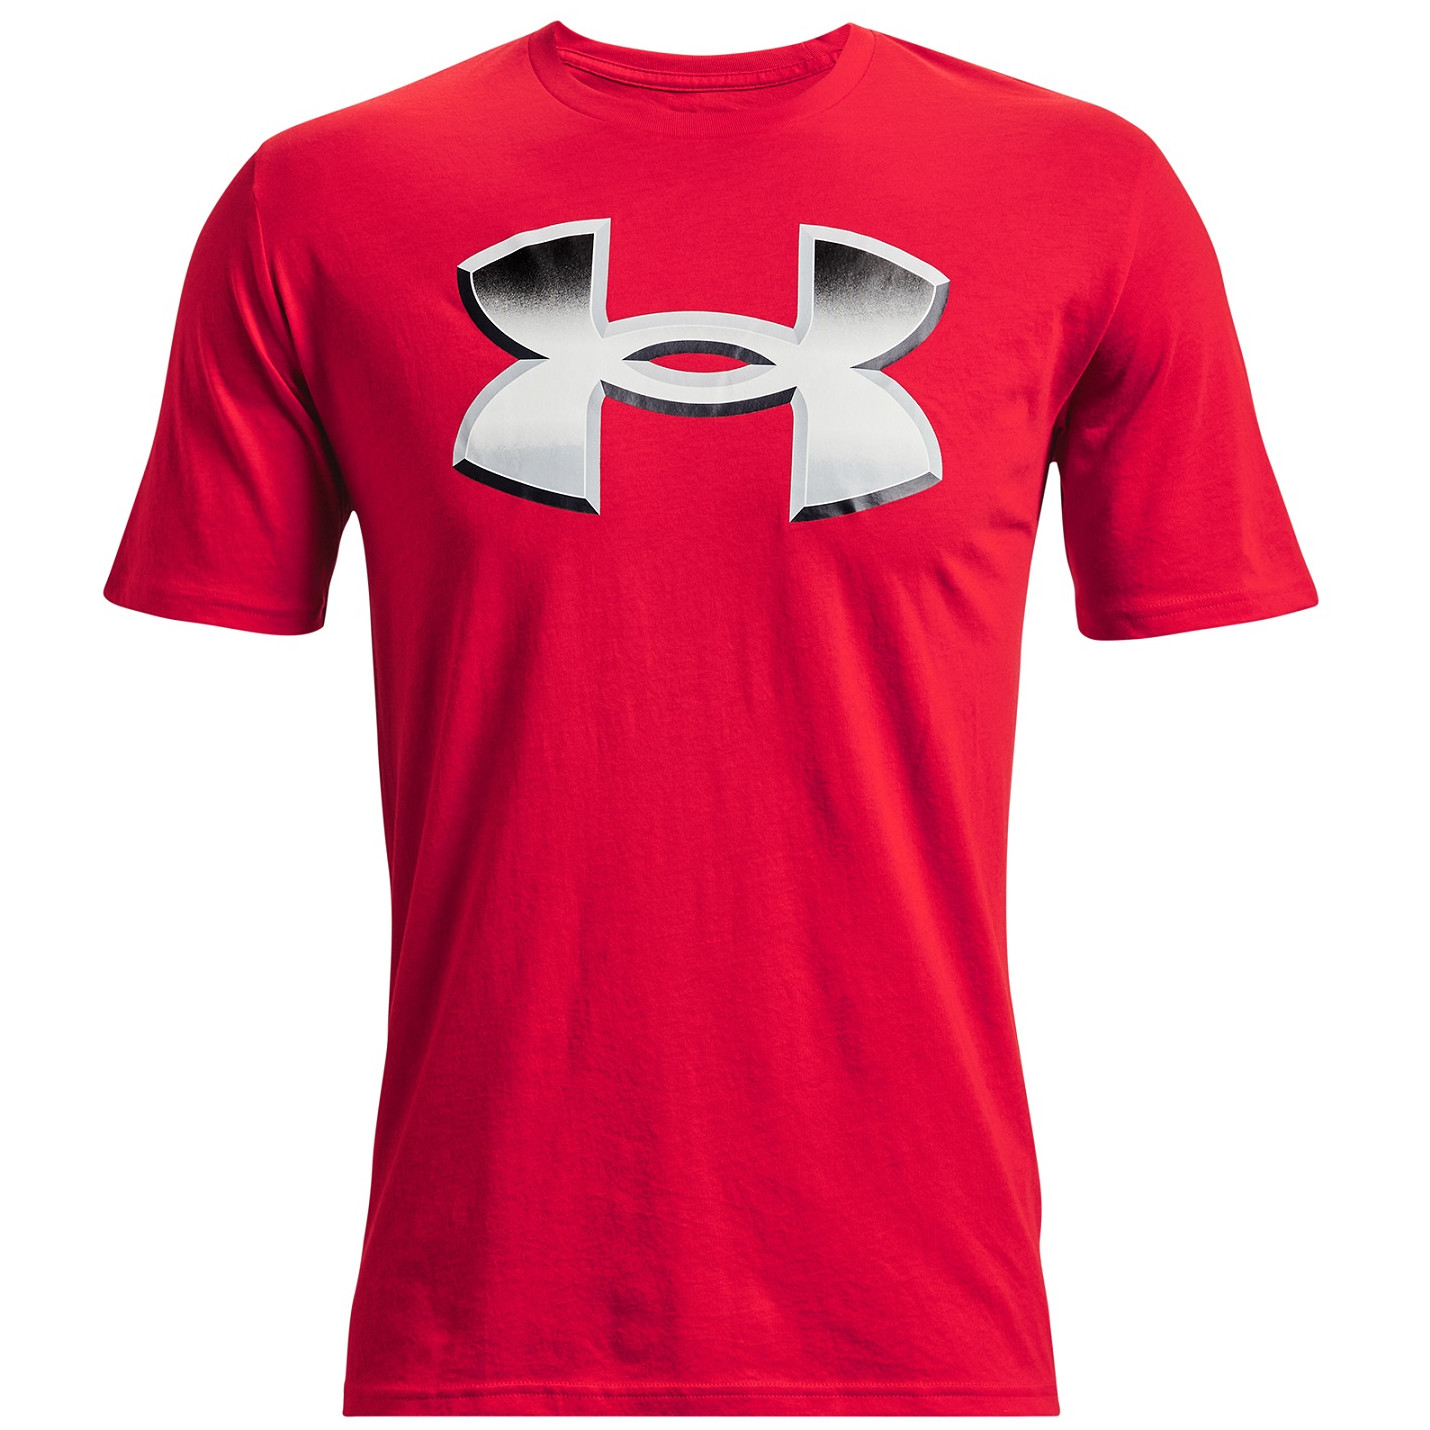 Pánské triko Under Armour Big Logo 2.0 SS Velikost: M / Barva: červená